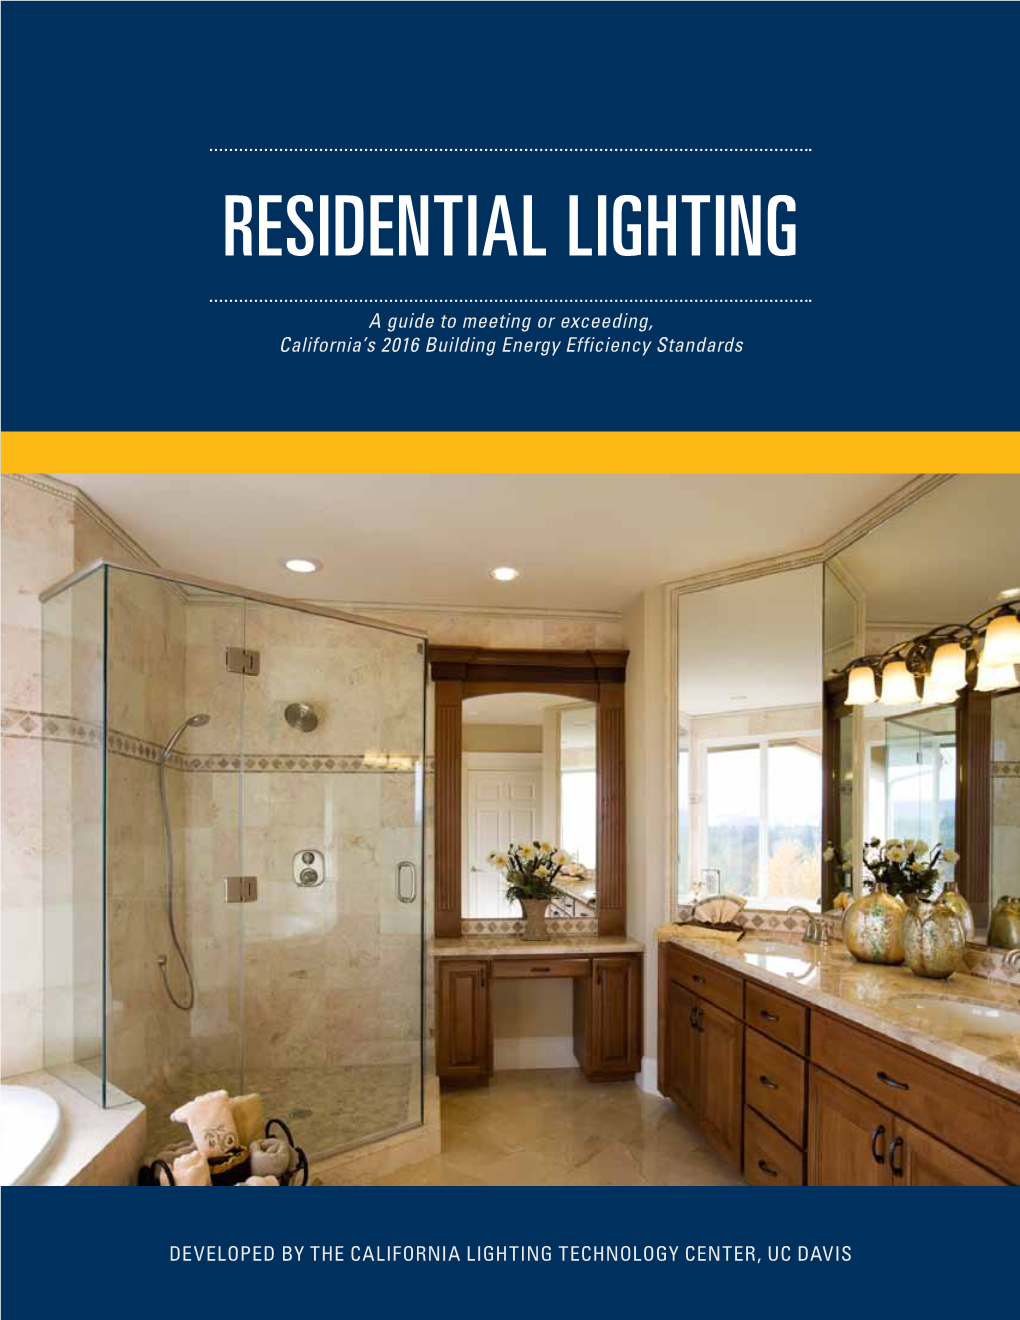 Residential Lighting Guide (PDF)